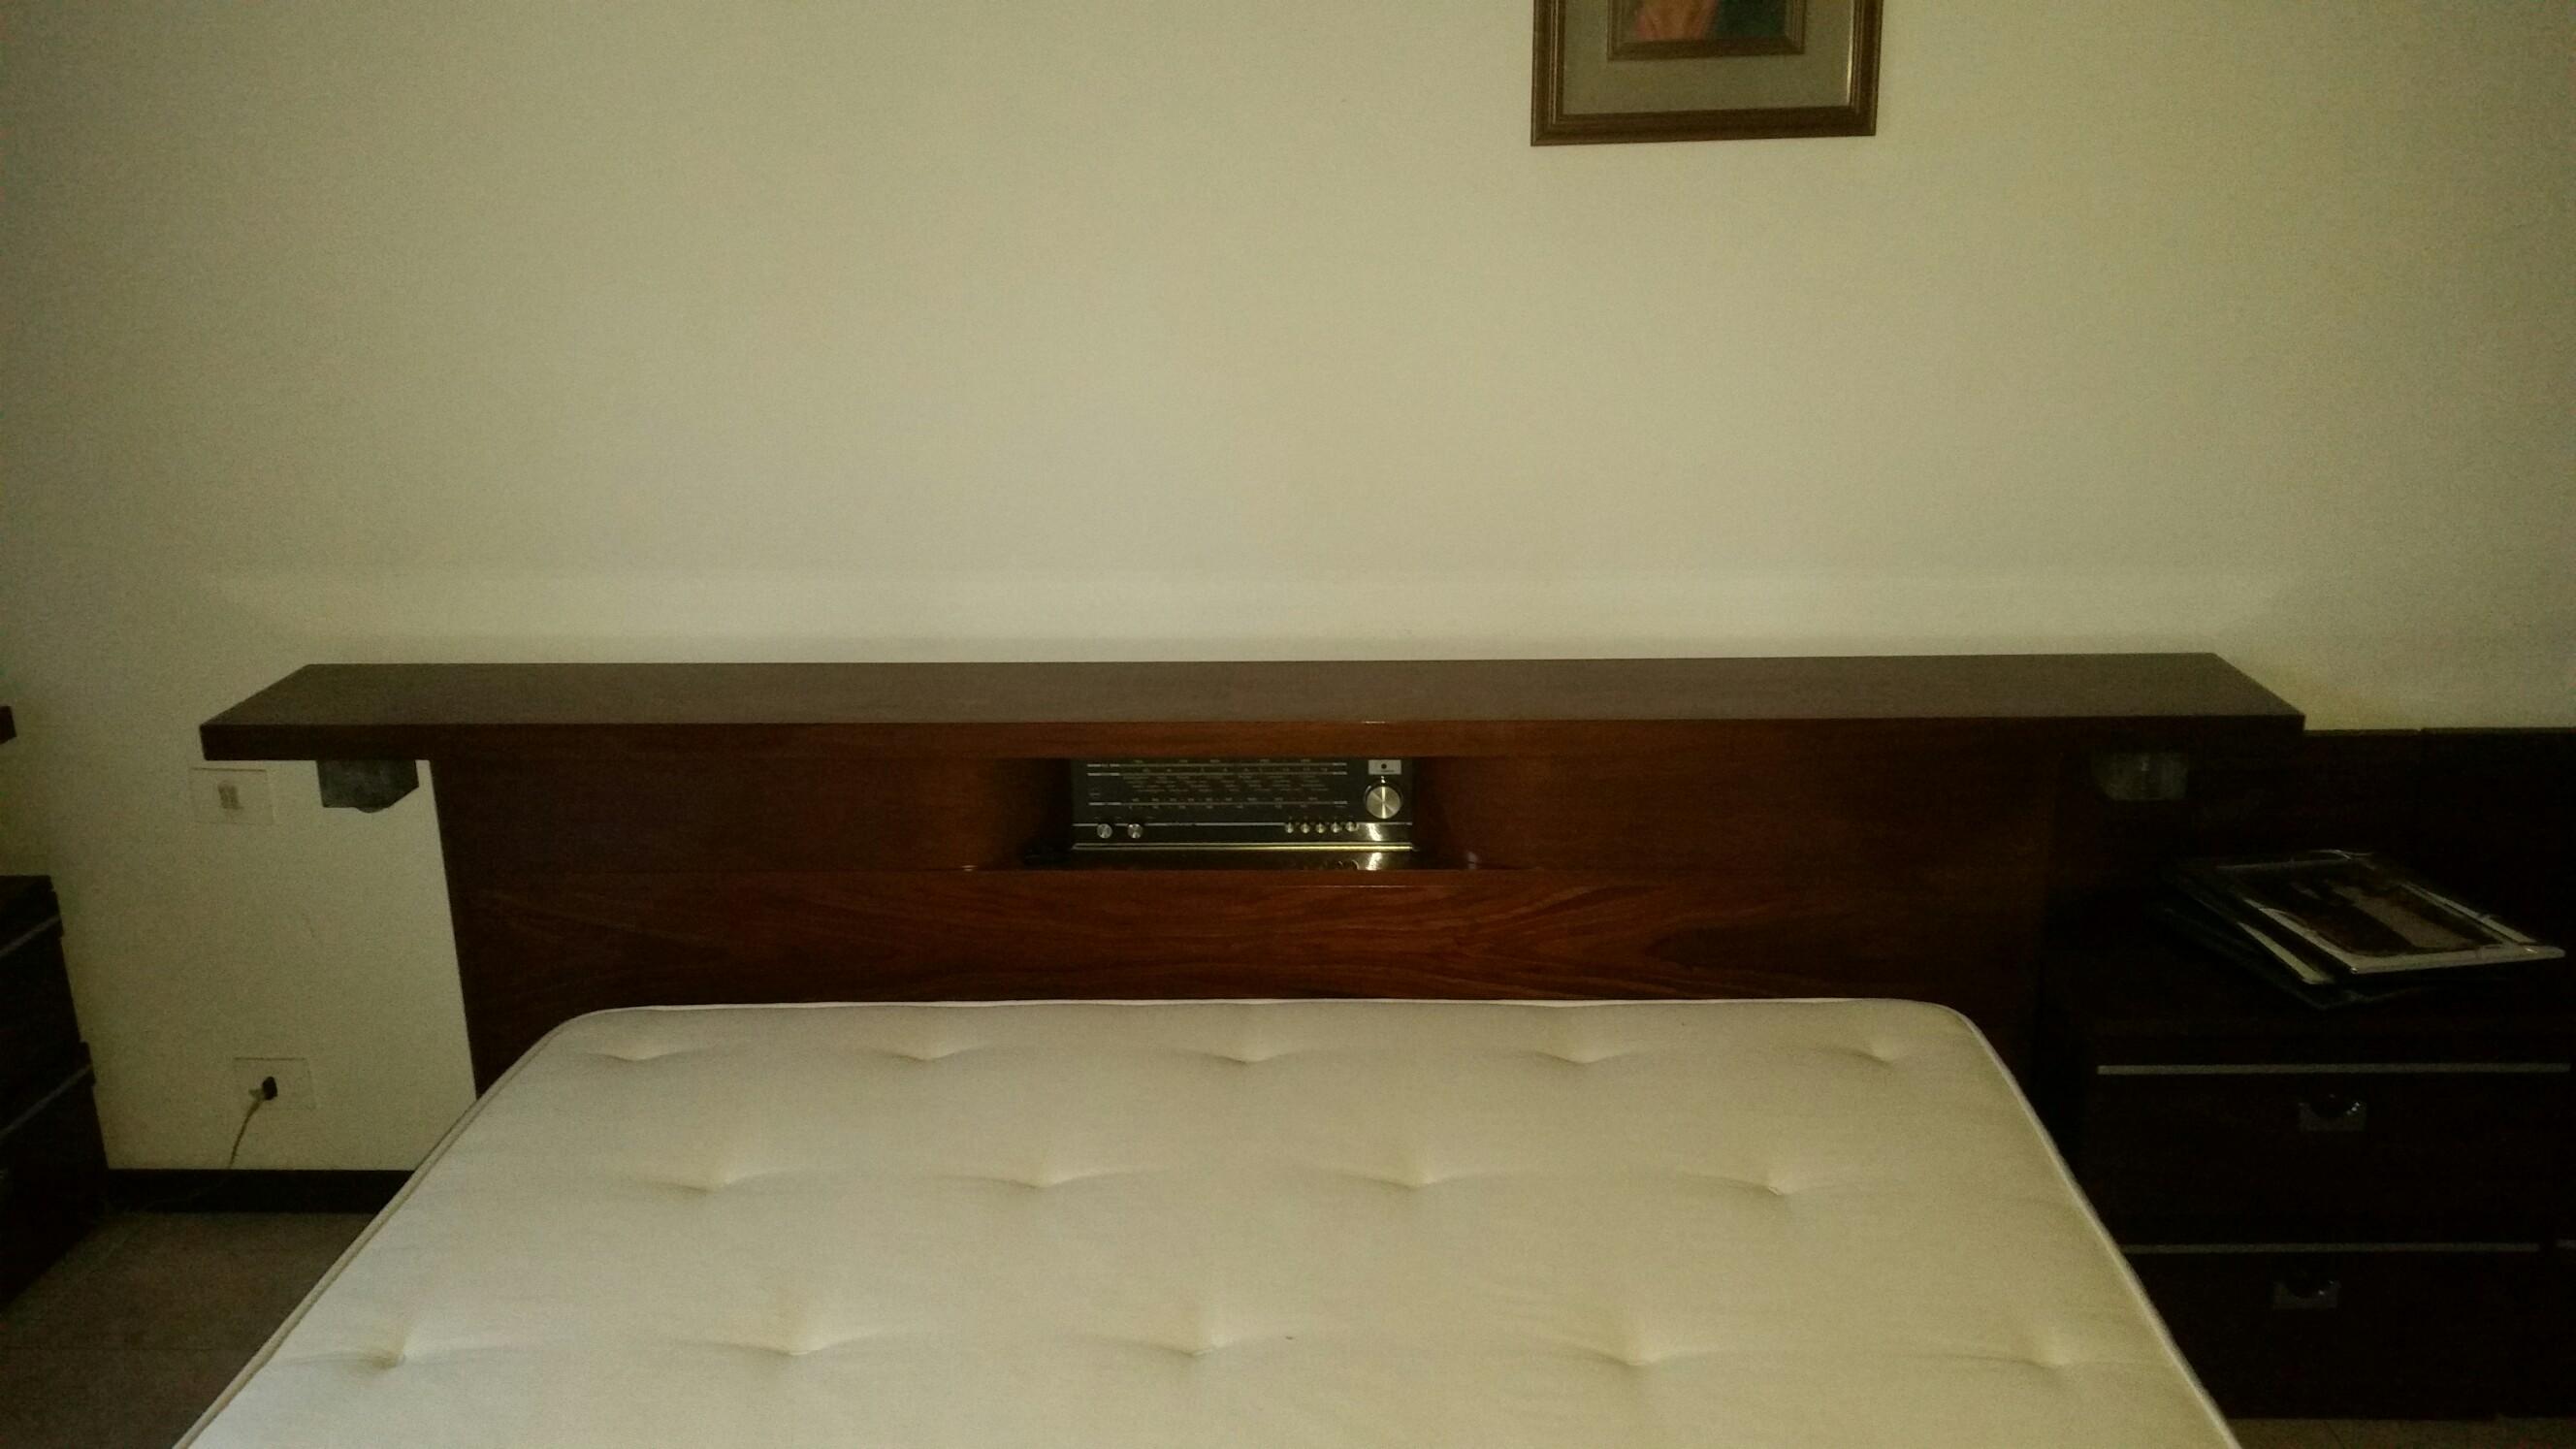 Camera da letto anni 70-80 in 20015 Villastanza for €150 ...